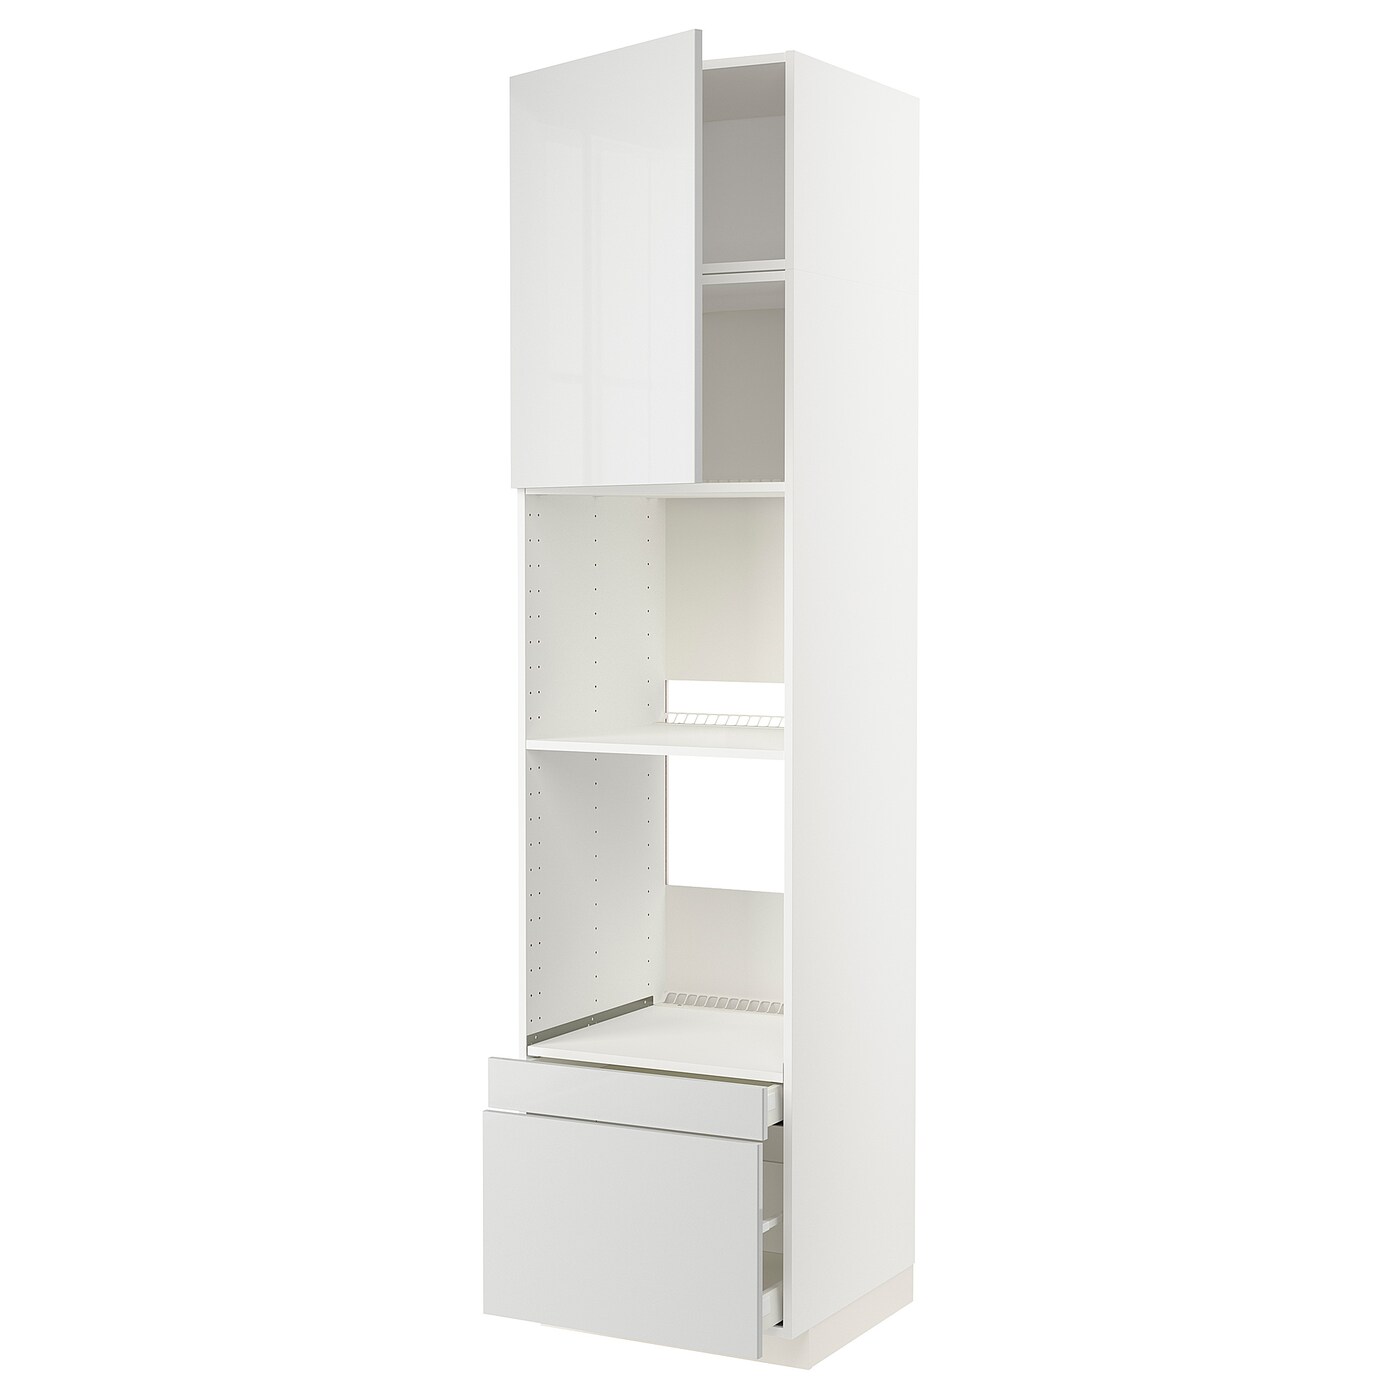 Высокий шкаф с ящиками - IKEA METOD/MAXIMERA/МЕТОД/МАКСИМЕРА ИКЕА, 240х60х60 см, белый/светло-серый глянцевый